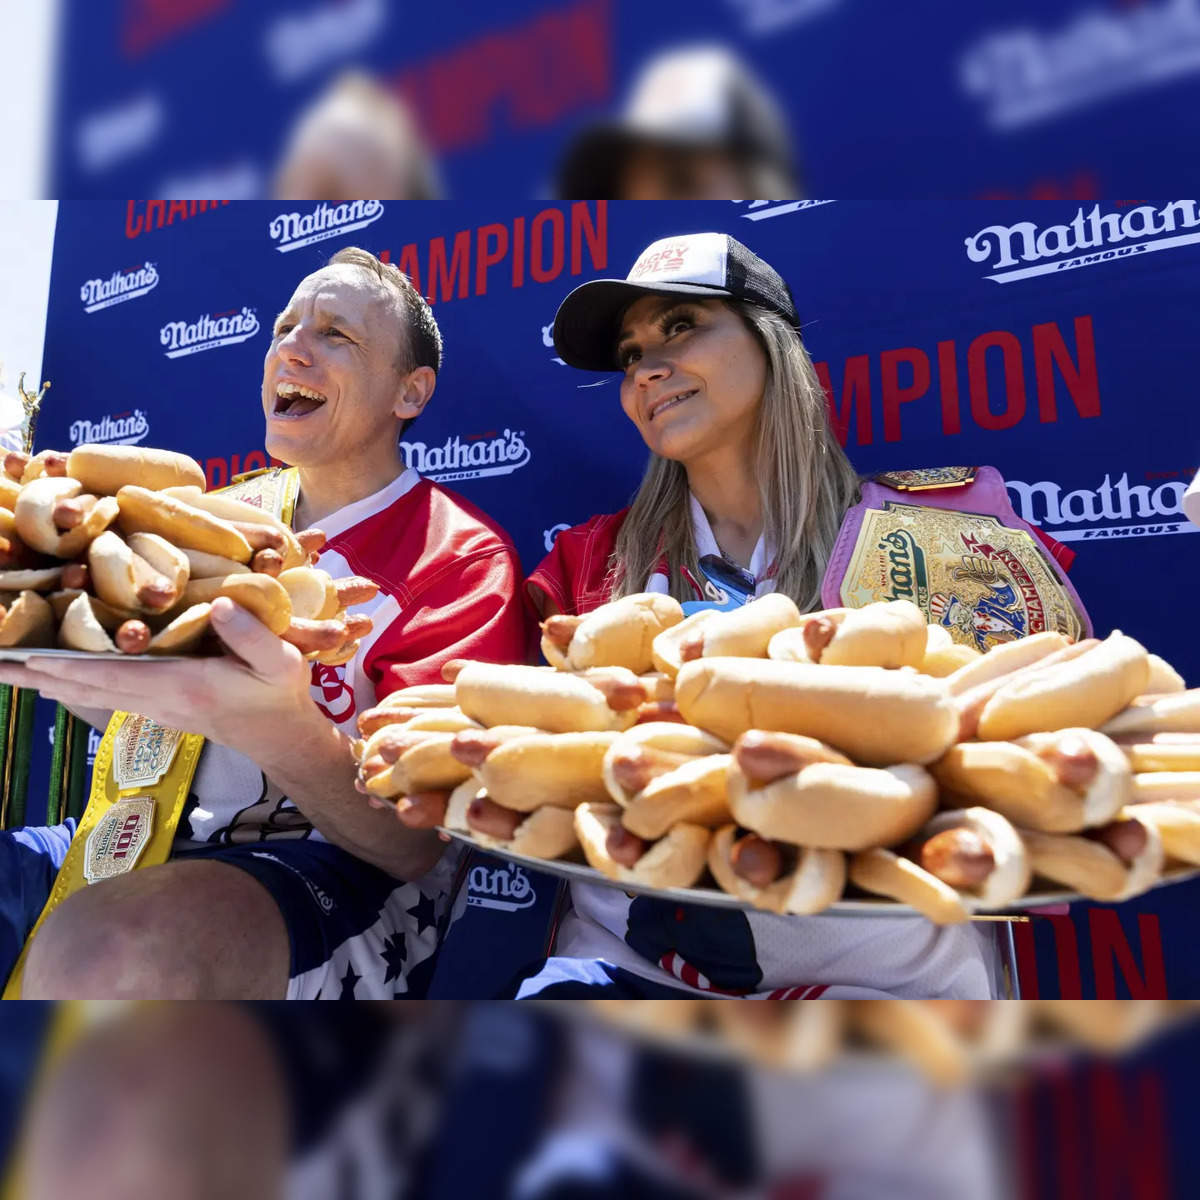 Photo: nathans hot dog prize